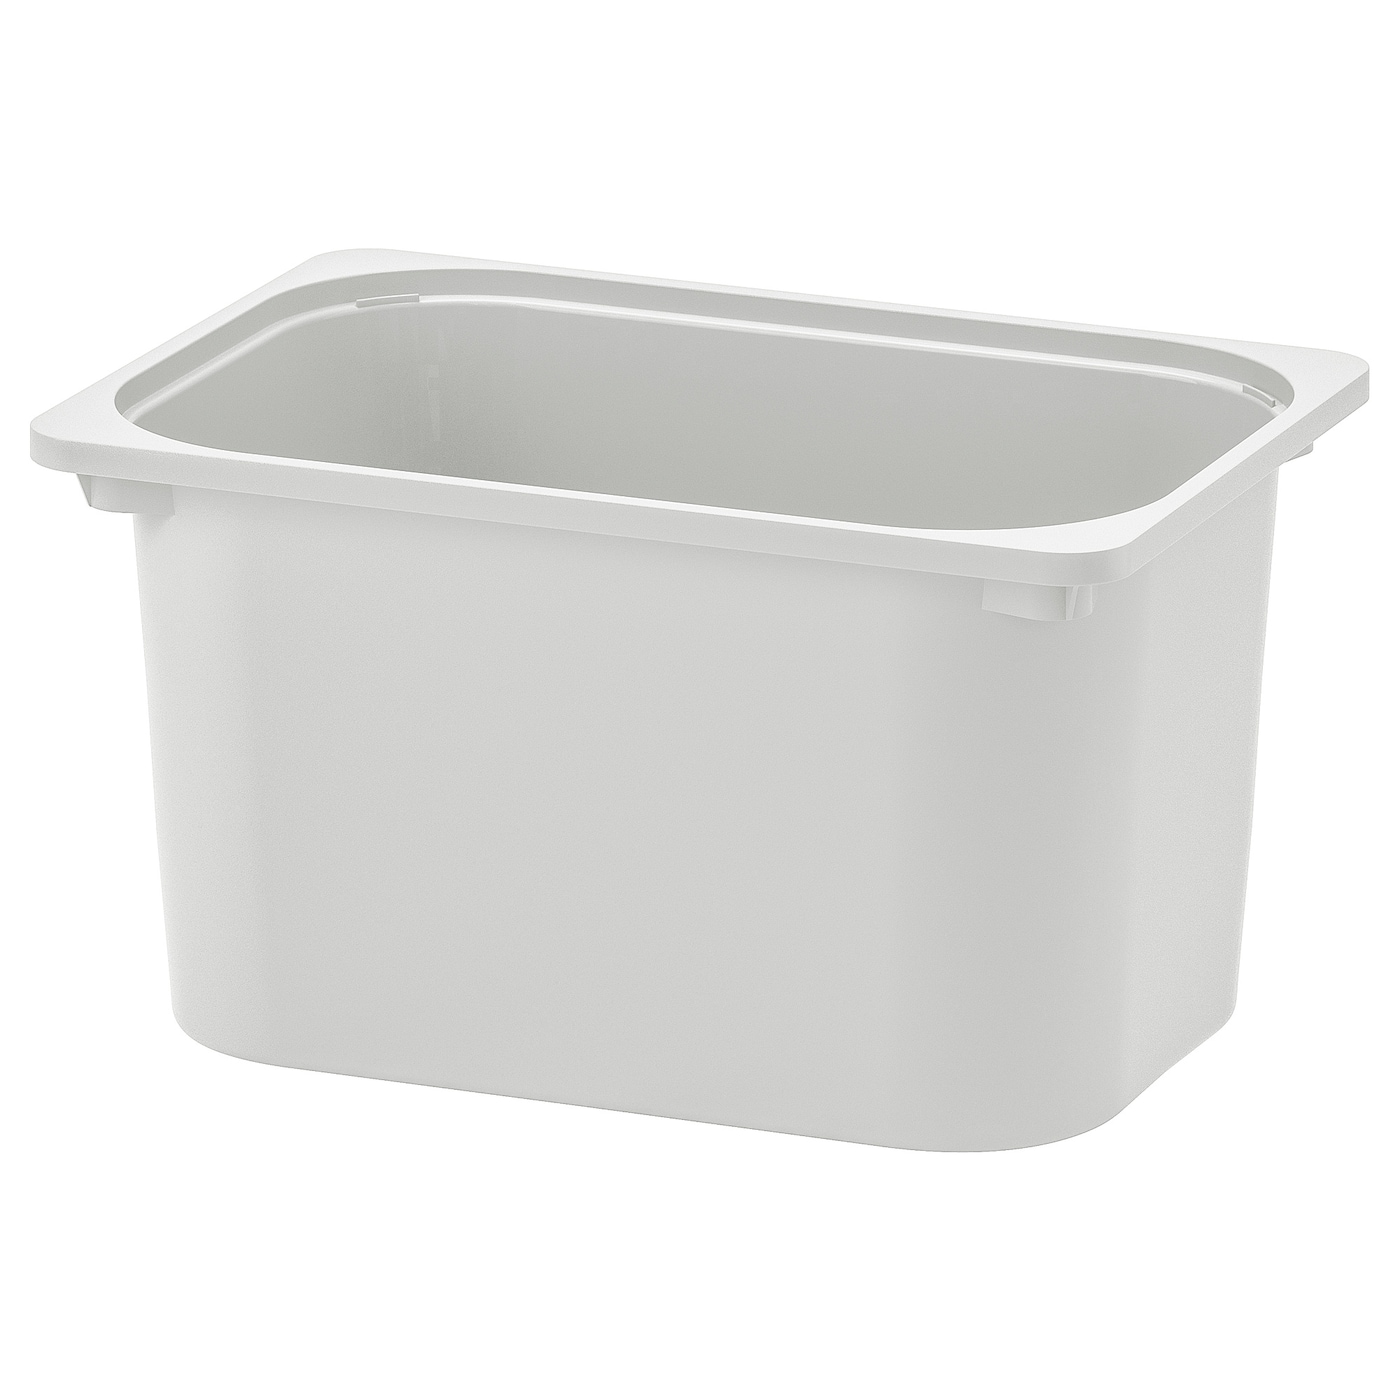 Ящик для хранения игрушек - TROFAST IKEA/ ТРУФАСТ ИКЕА, 42x30x23 см, серый